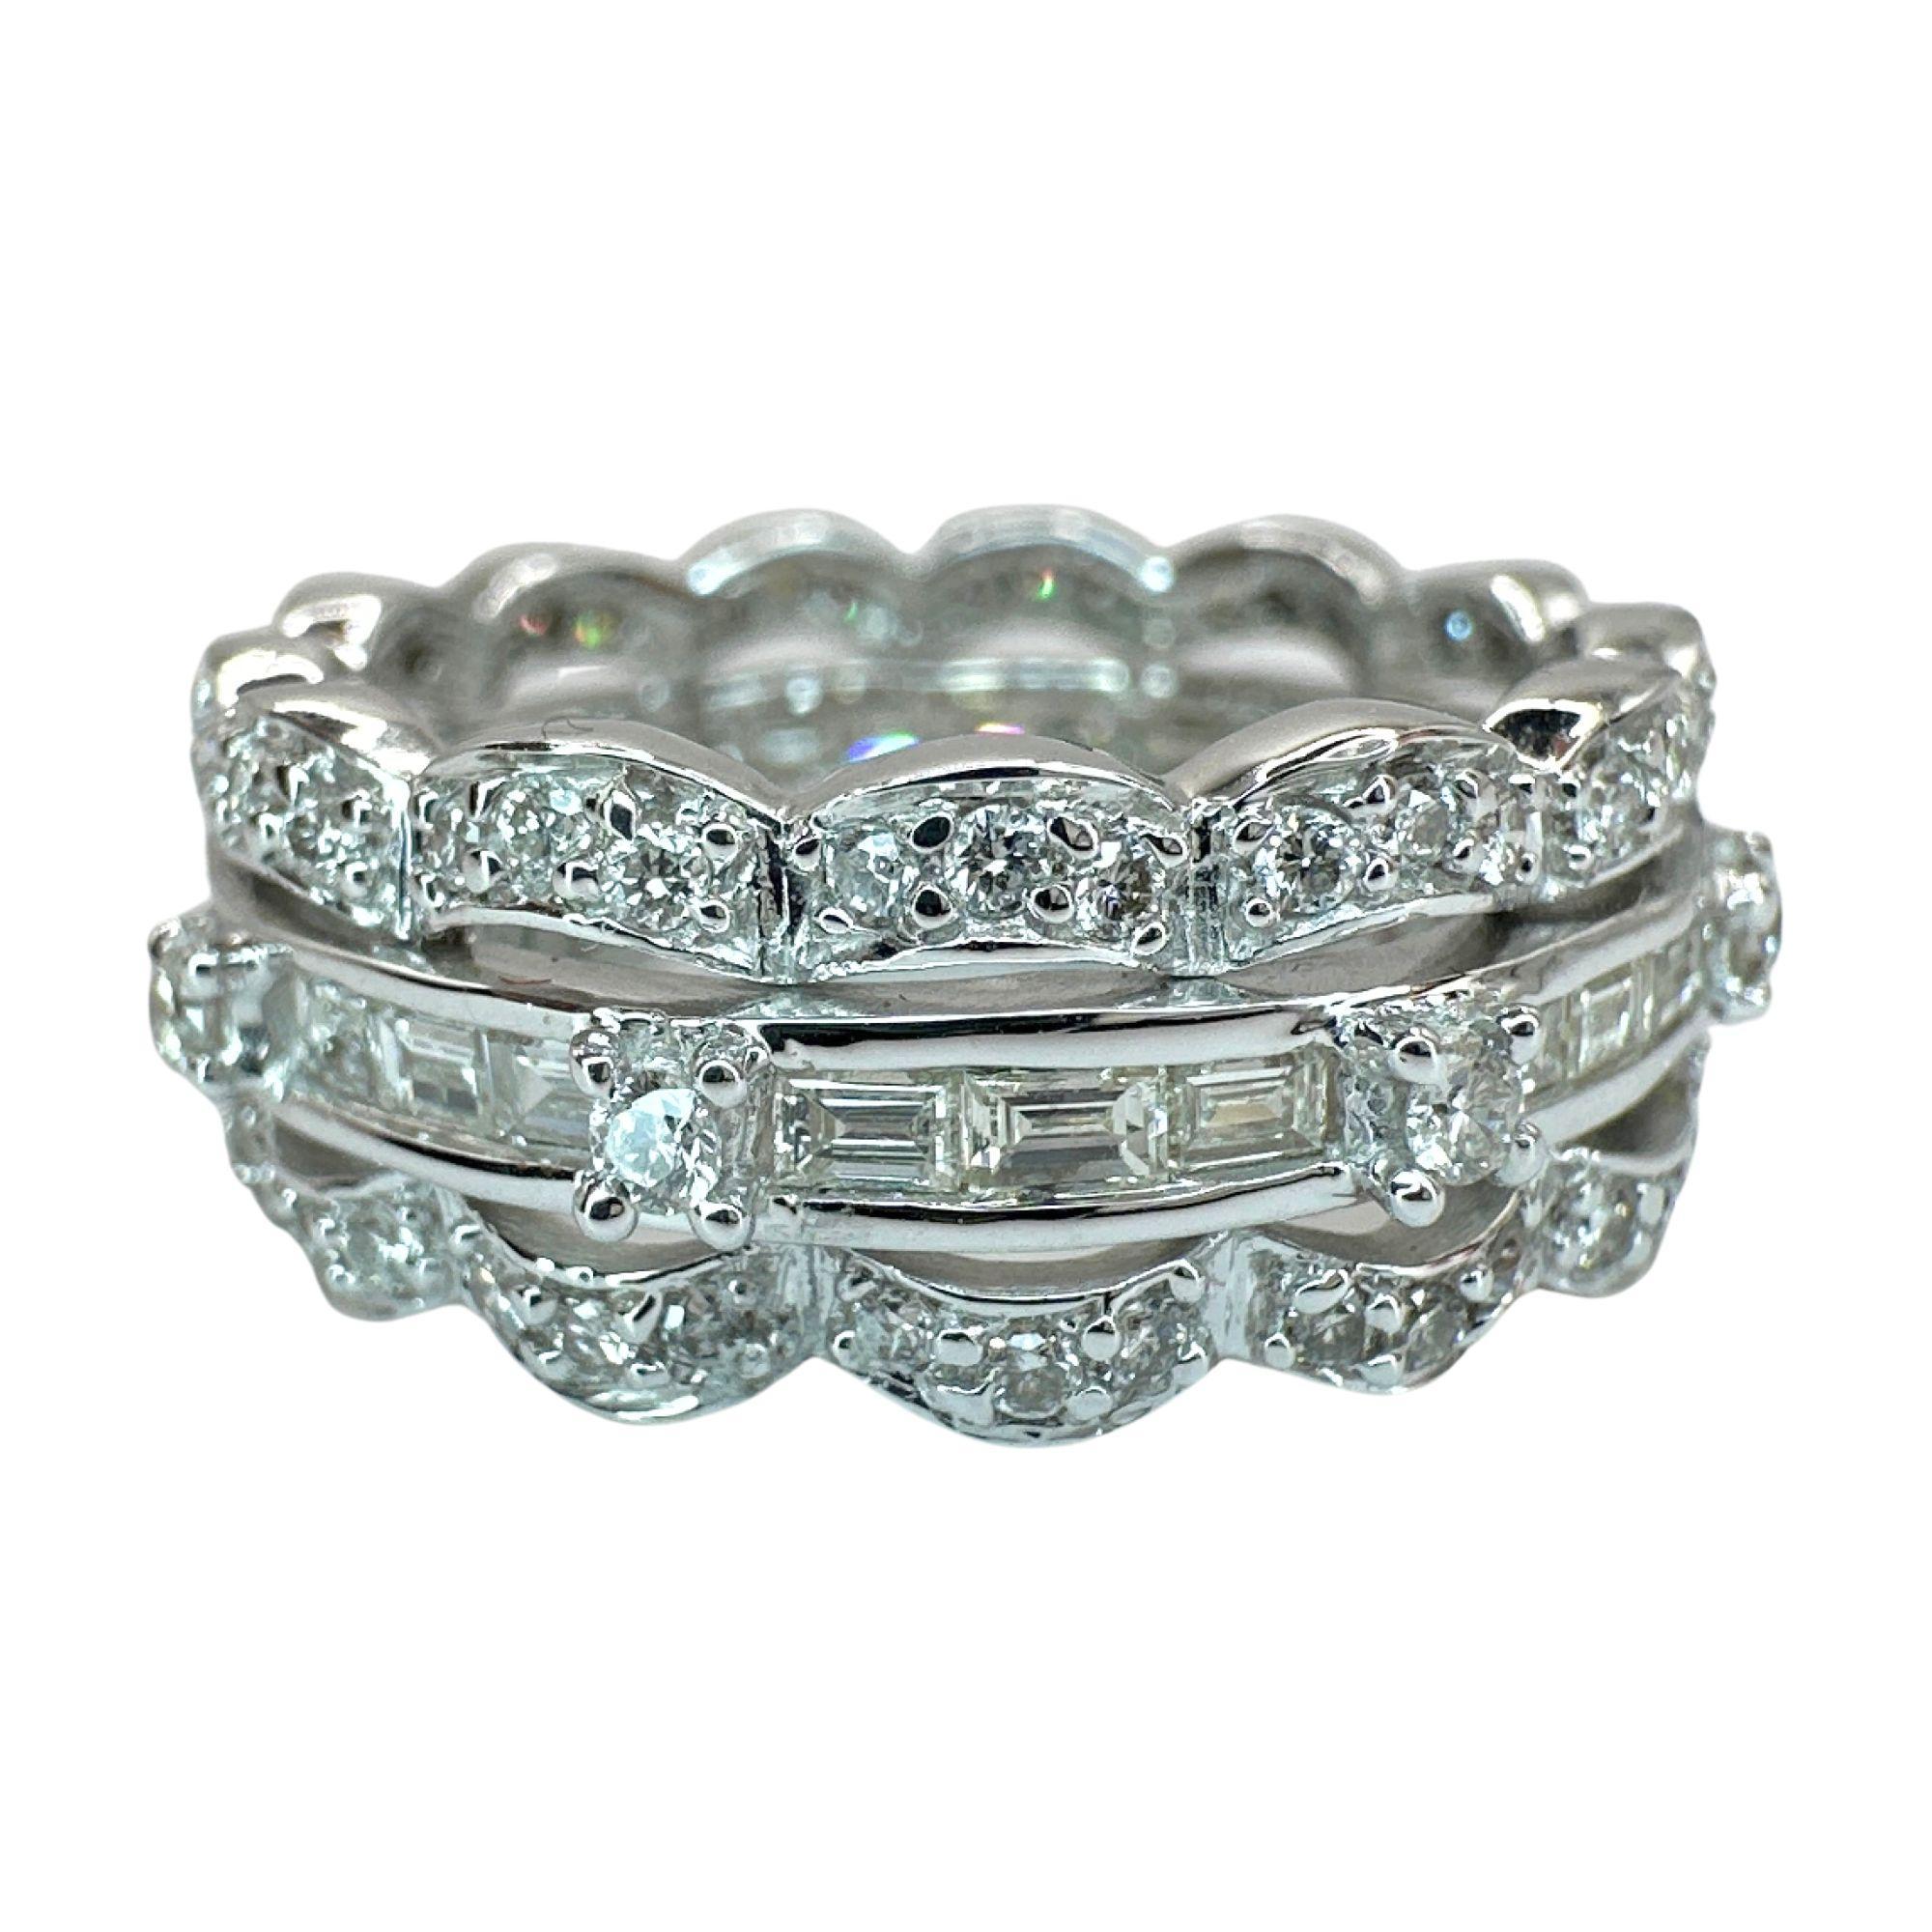 Gönnen Sie sich Luxus mit unserem 18k Baguette Cut Diamond Band Ring. Der aus 18 Karat Weißgold gefertigte Ring ist mit 0,65 Karat Diamanten im Baguetteschliff und 0,64 Karat Diamanten verziert und strahlt Eleganz aus. Die perfekte Größe 6,75 mit